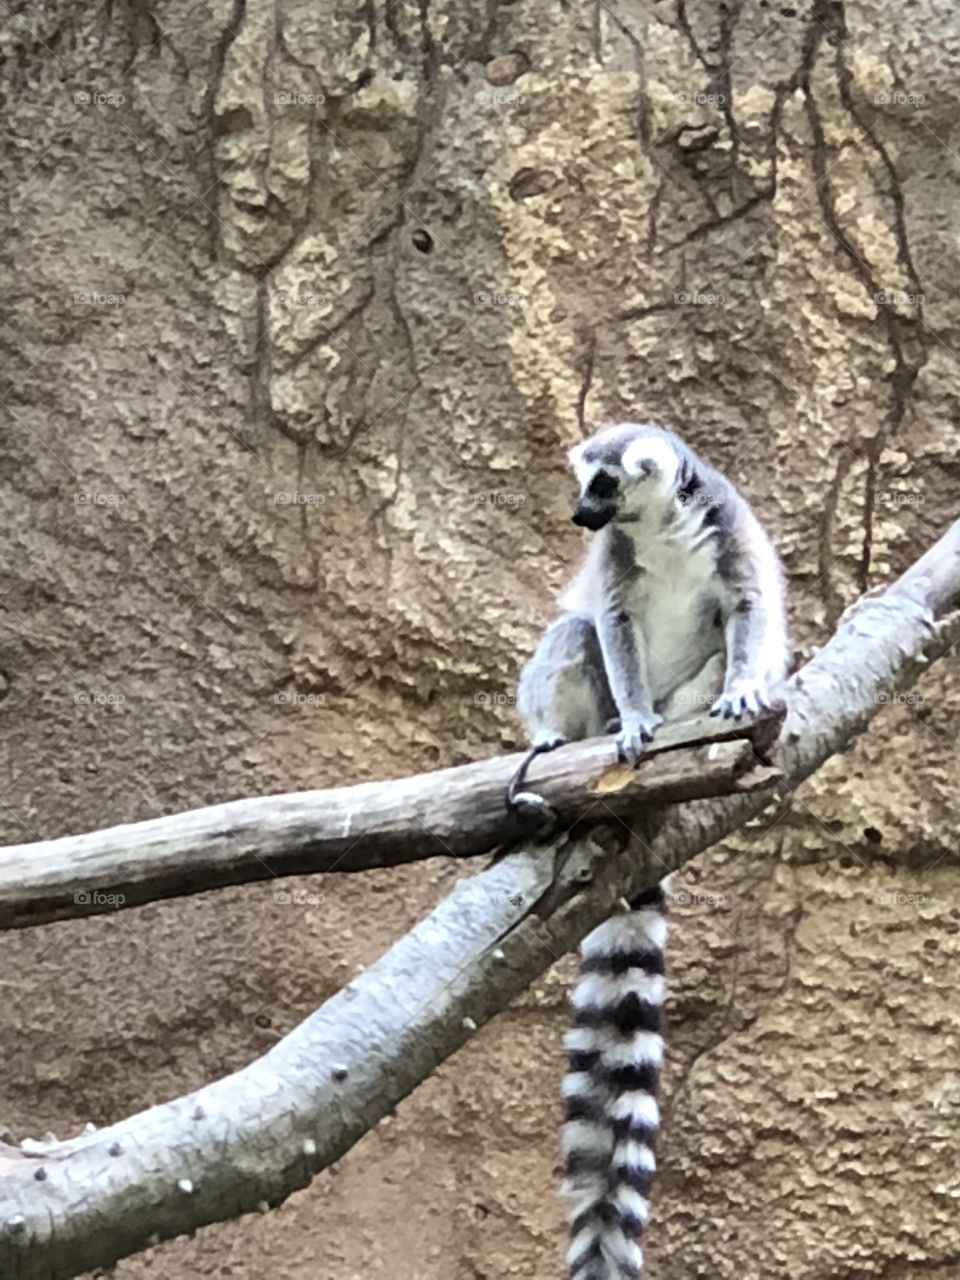 Lemur at the zoo